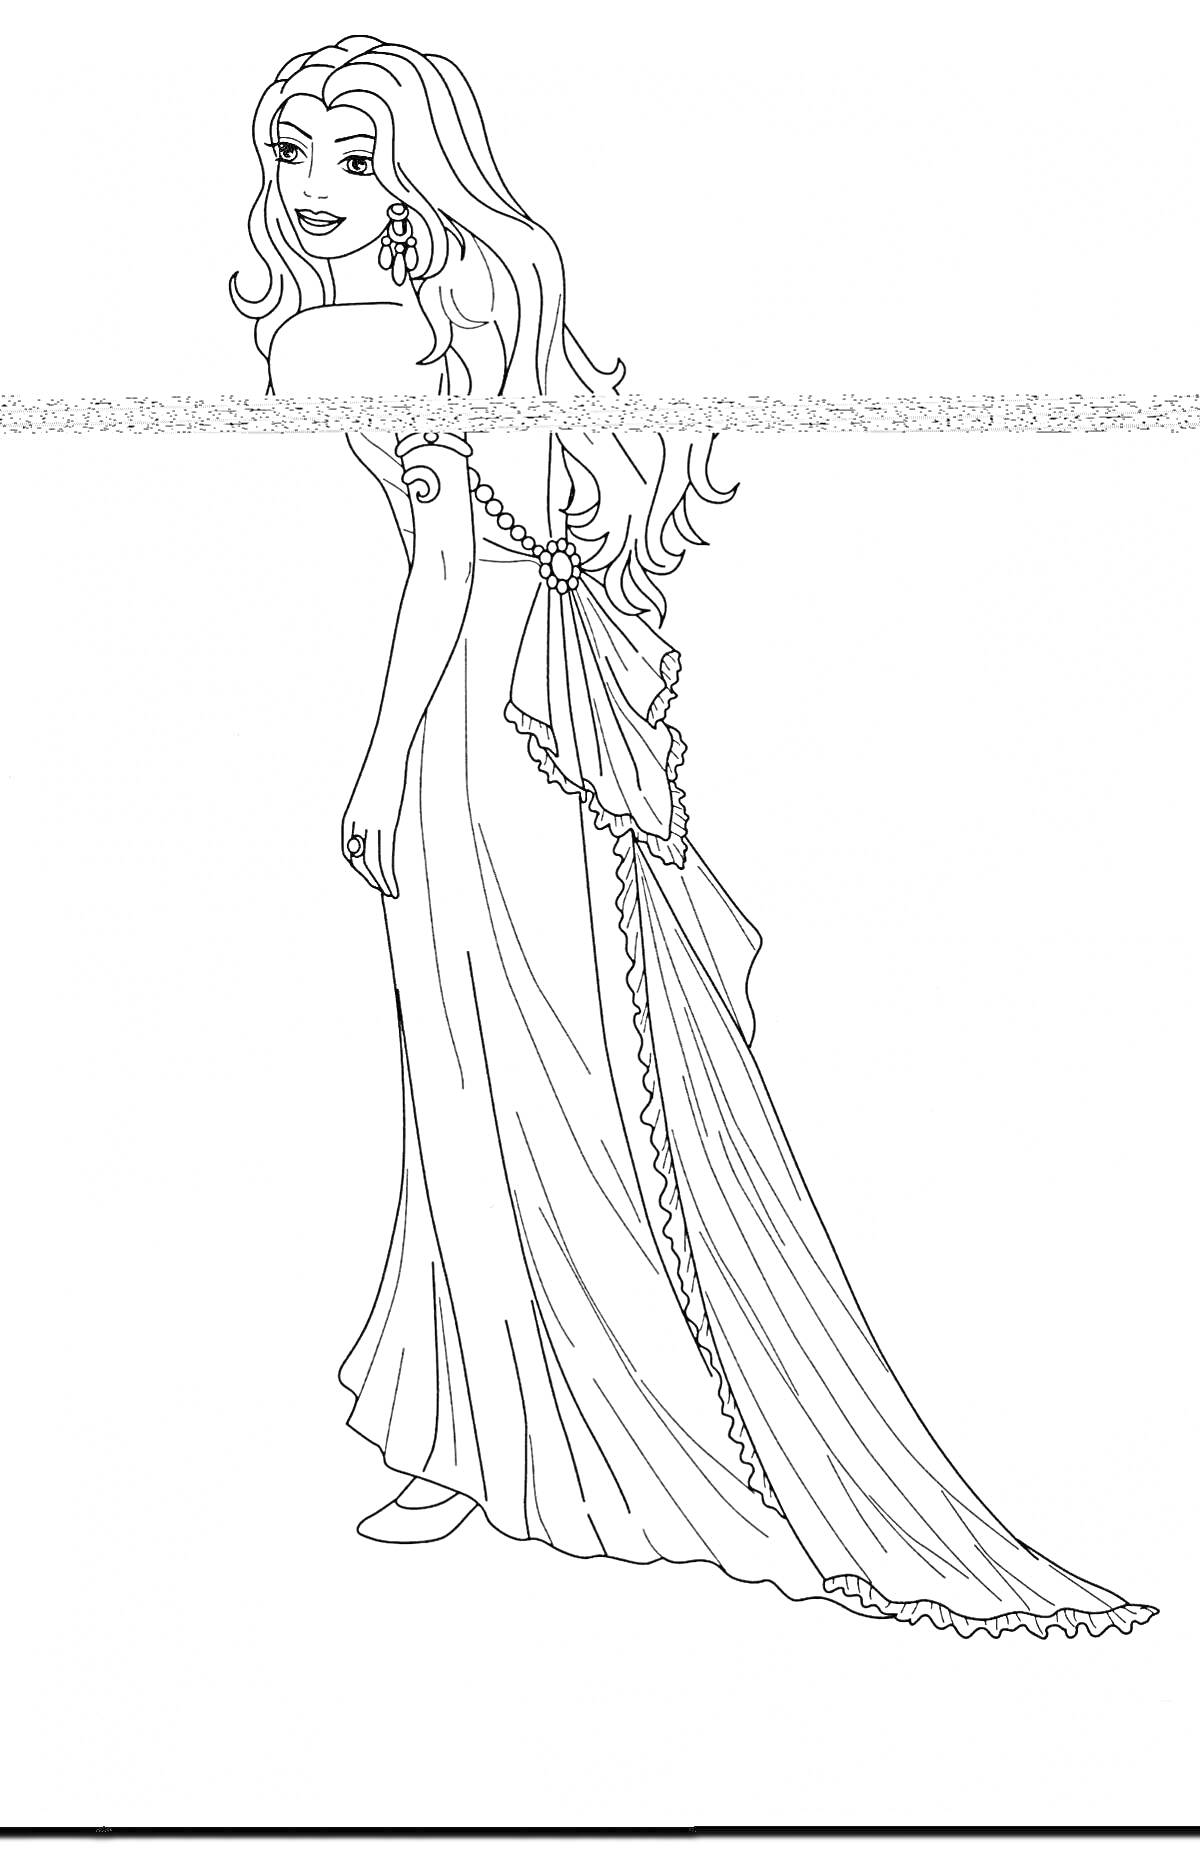 Раскраска Принцесса в длинном платье с украшениями и длинными волосами